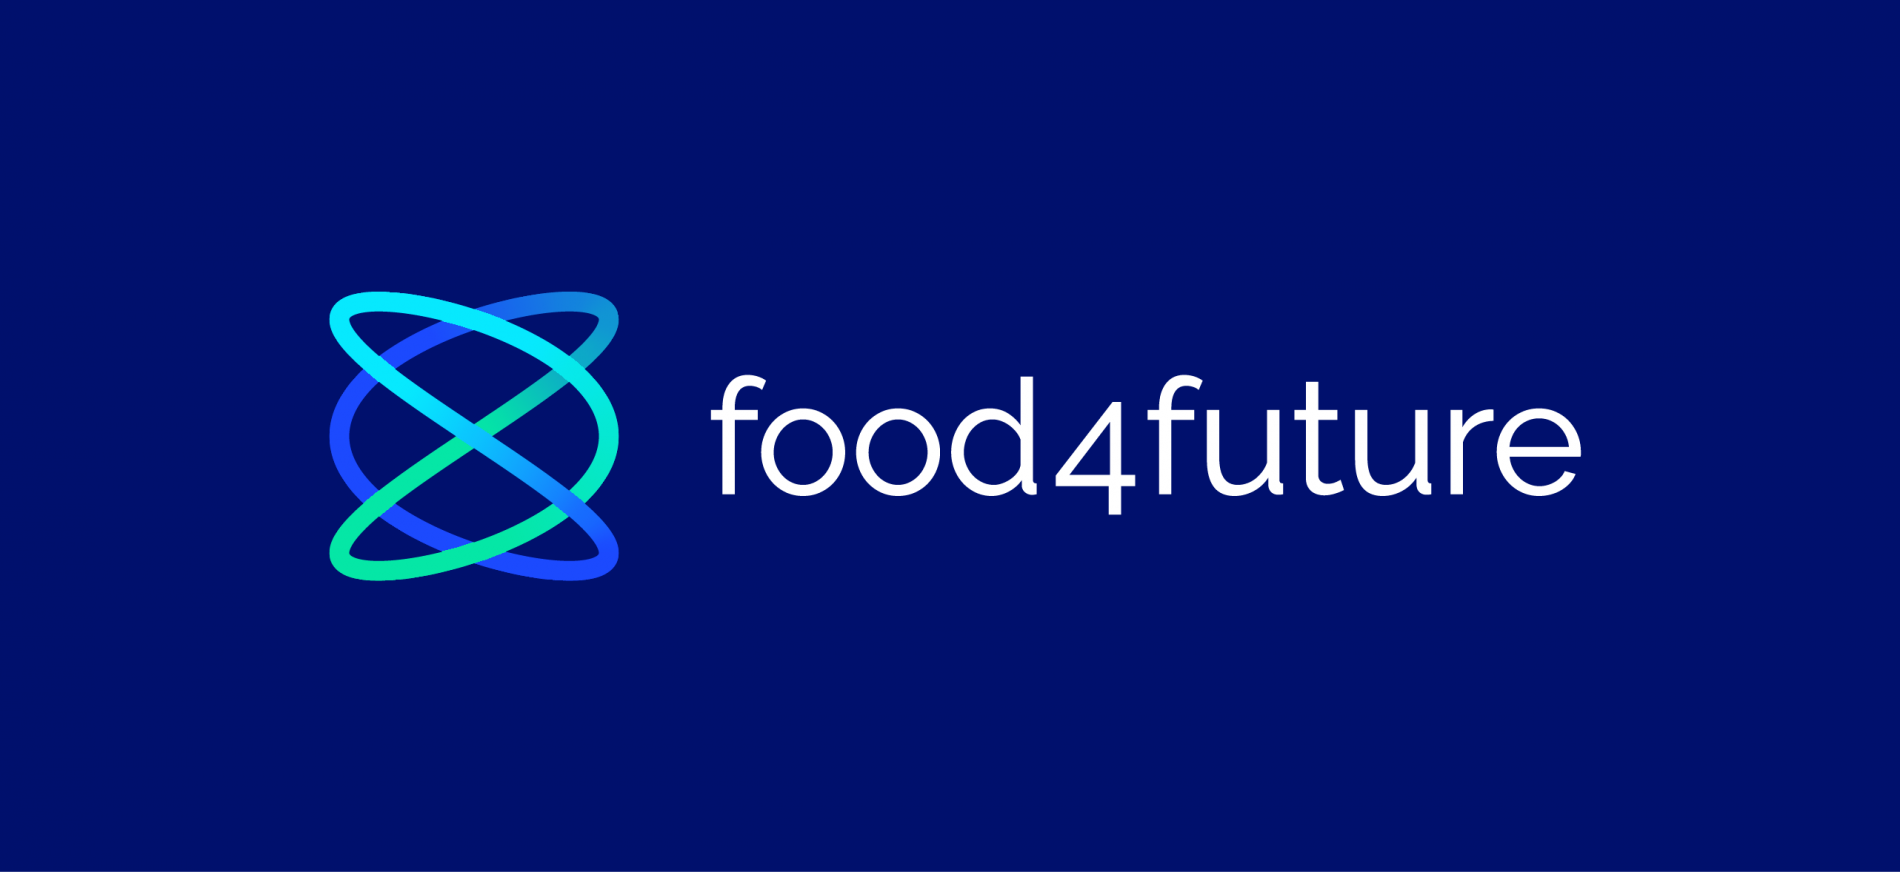 f4f_logo_bg_blue.png